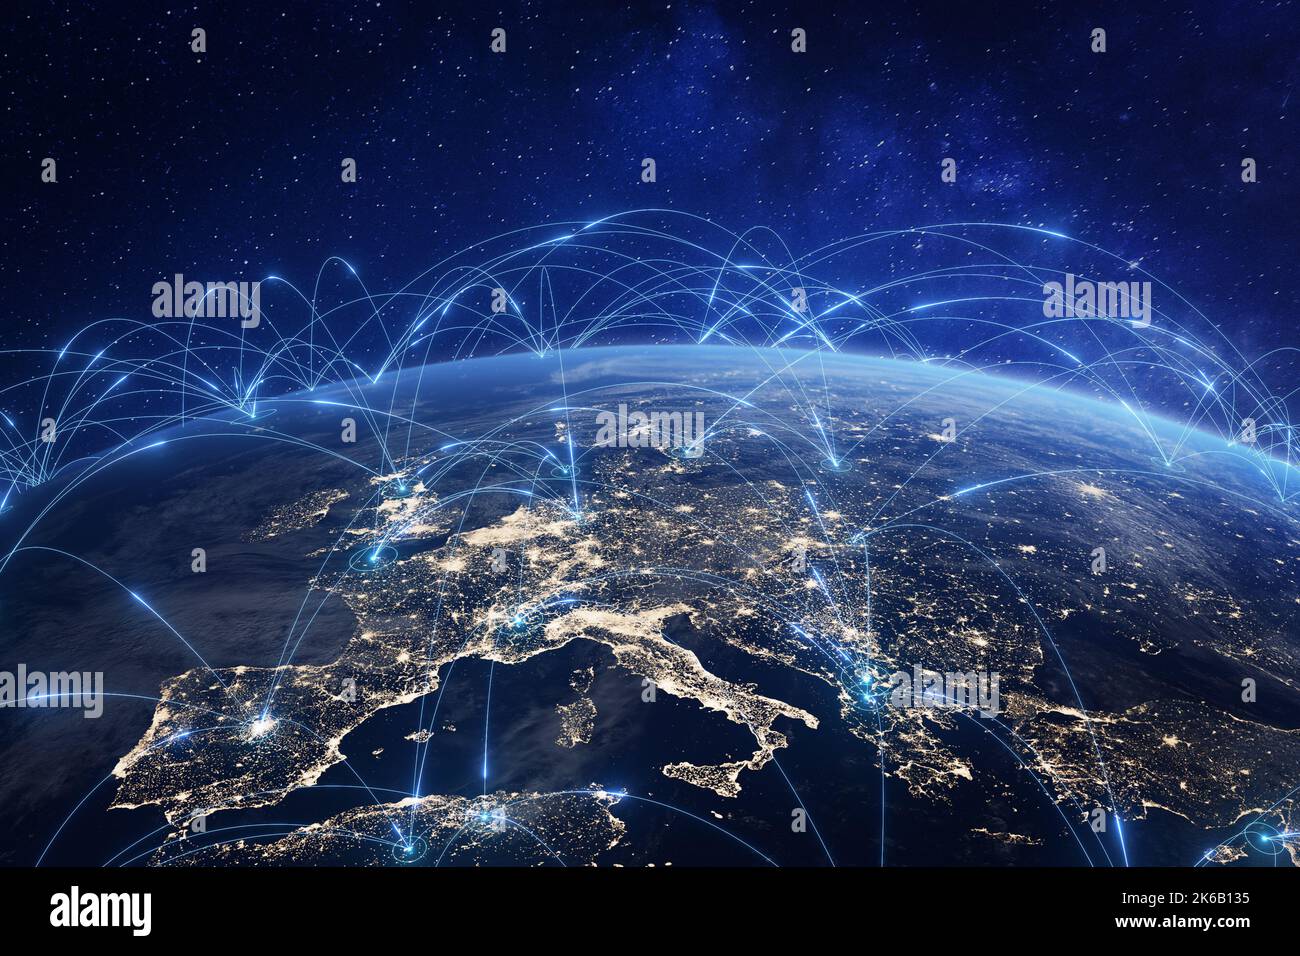 Technologie de communication avec un réseau Internet mondial connecté en Europe. Télécommunications et transfert de données liaisons européennes. IoT, finance Banque D'Images